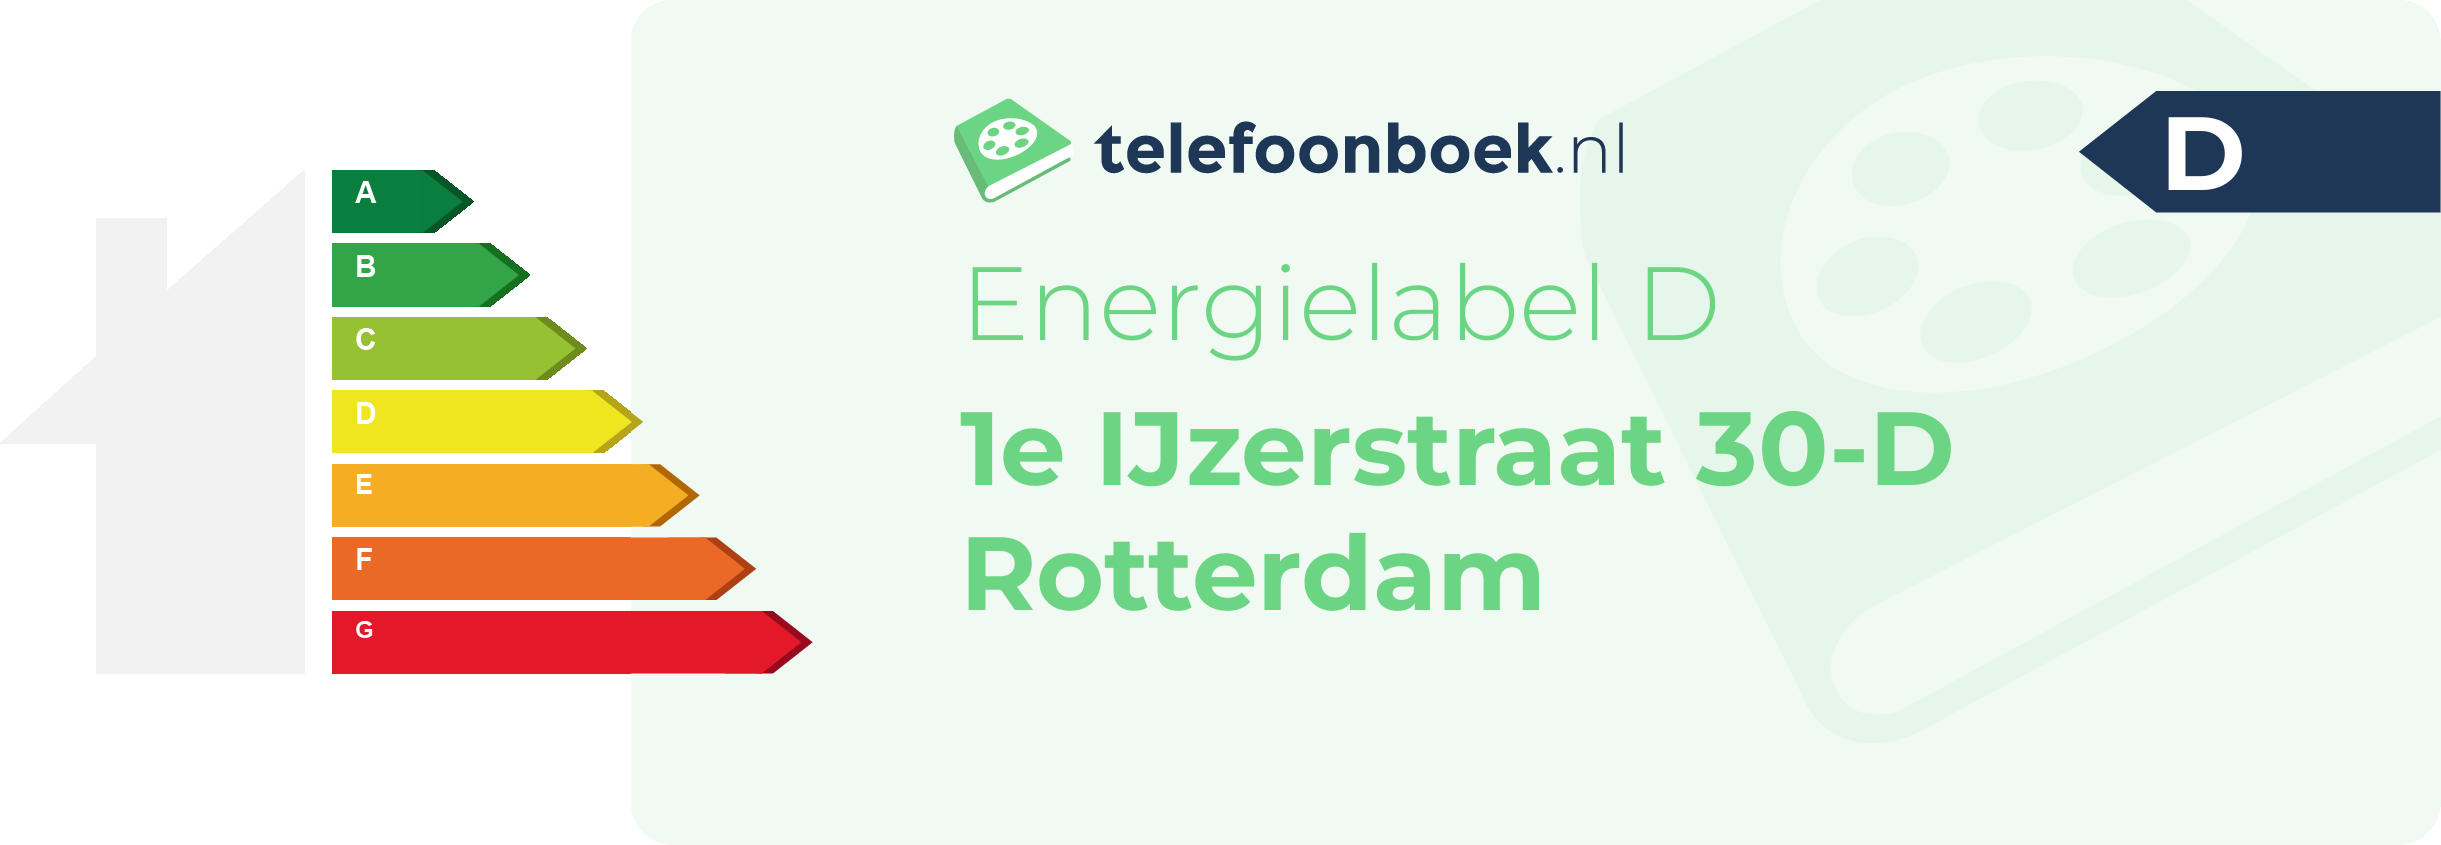 Energielabel 1e IJzerstraat 30-D Rotterdam